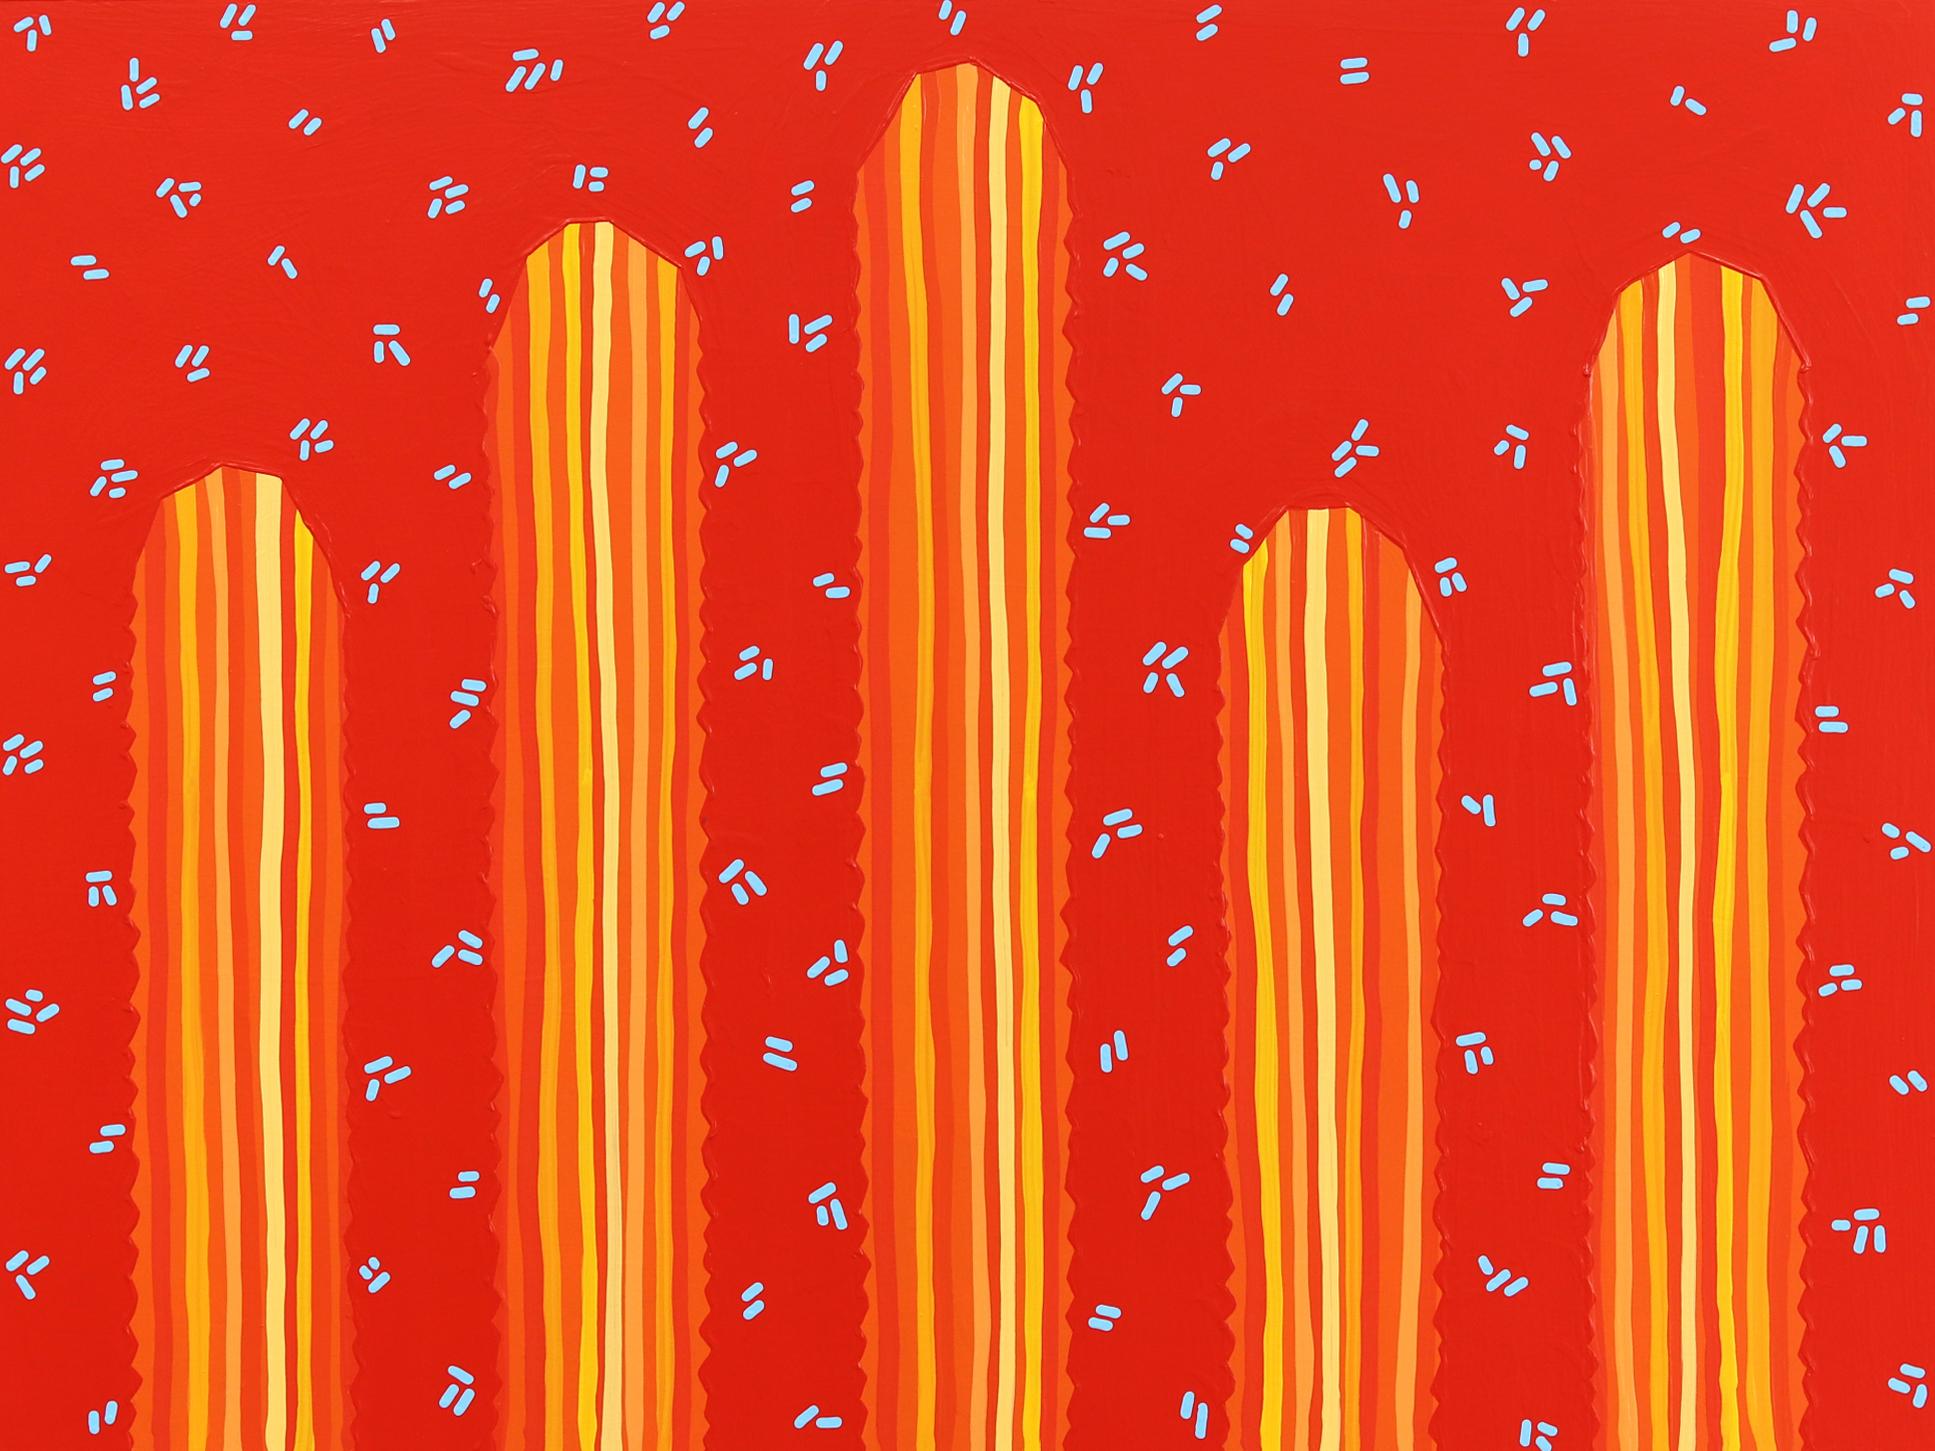 Sedona - Peinture de cactus d'inspiration Pop Art d'inspiration Sud-Ouest rouge orange vif